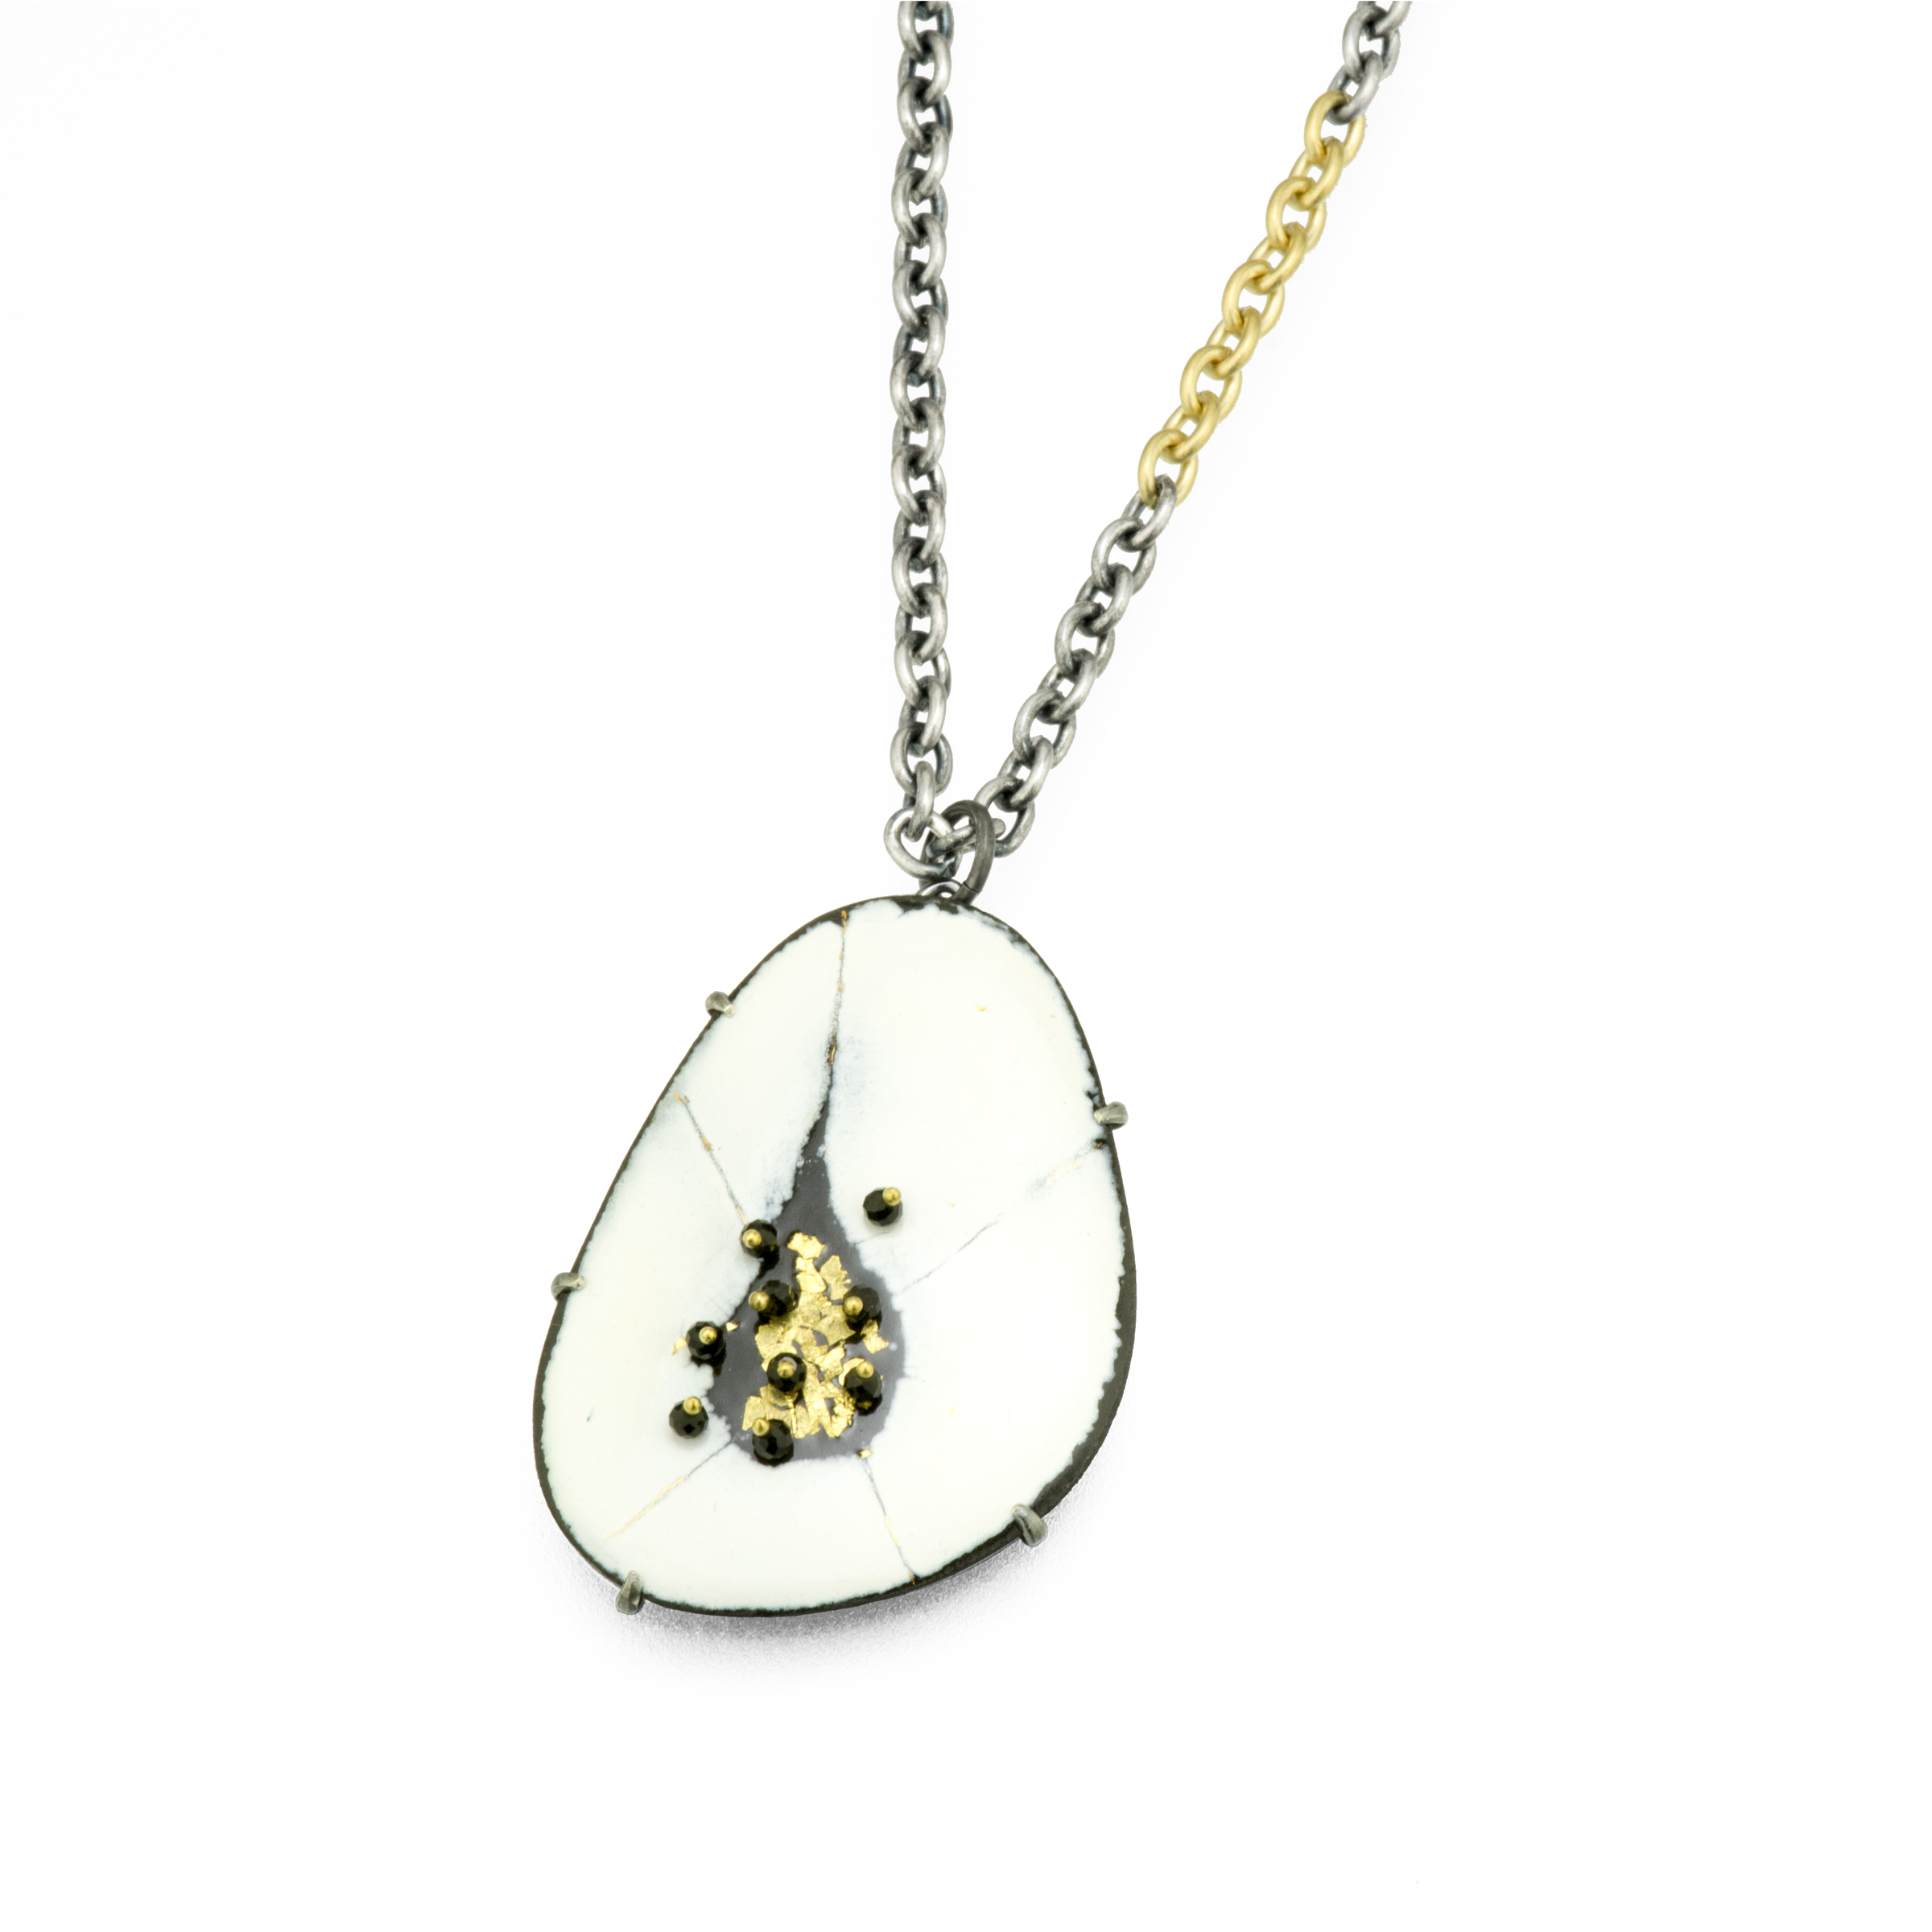 enamel-pendant-necklace-gold-white-jenne rayburn